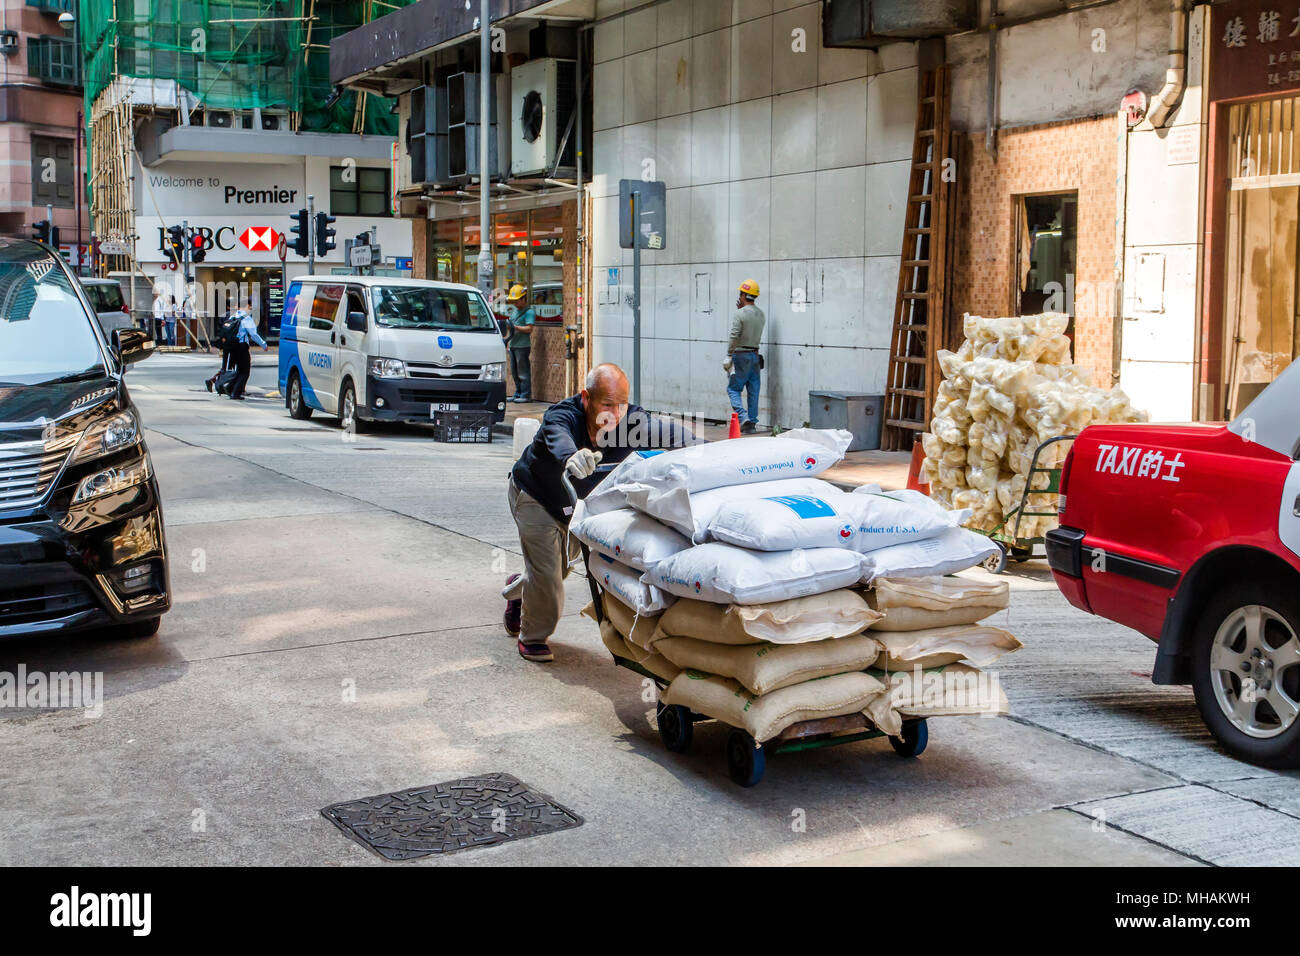 Un anziano uomo asiatico spinge un carrello caricato con sacchi di merci attraverso una strada di Hong Kong Island. Alcuni sacchi sono contrassegnati come prodotto di U.S.A. Foto Stock